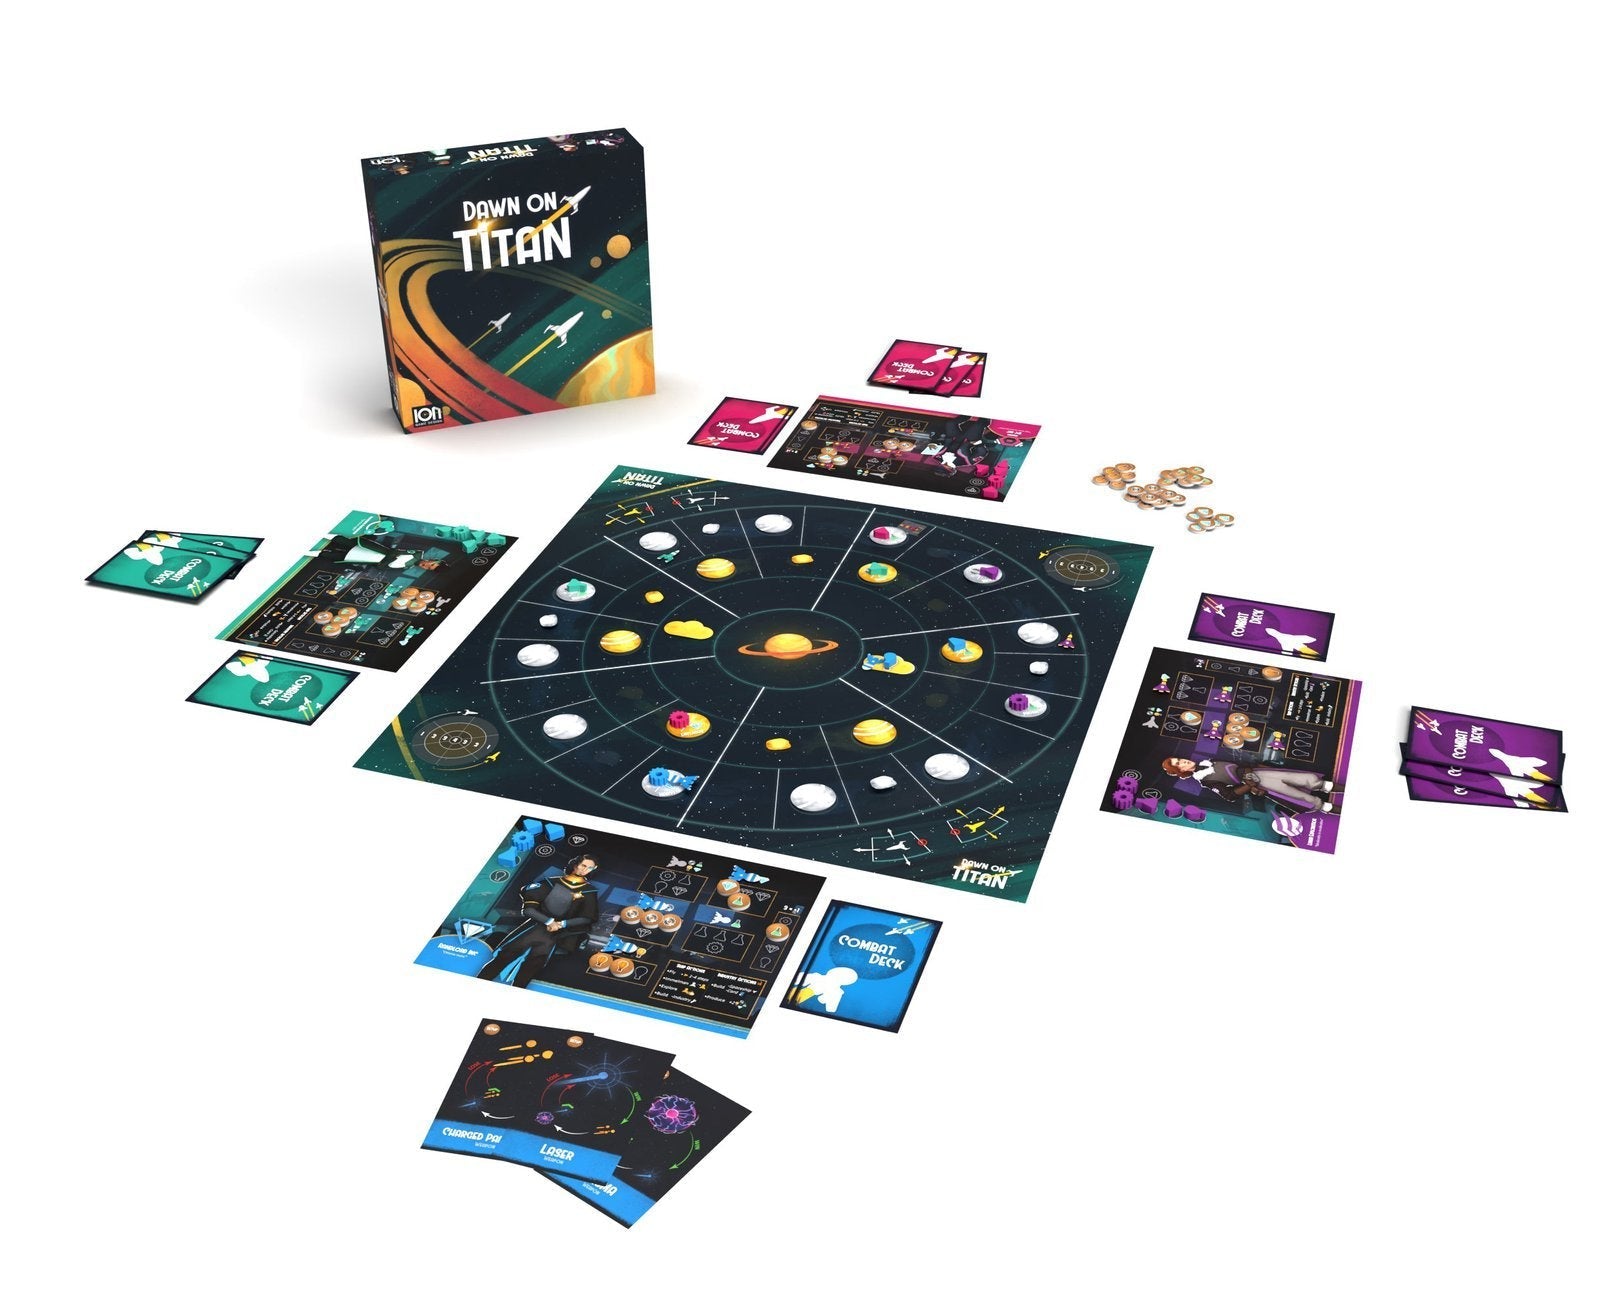 Dawn on Titan Board Game - game board set up to play